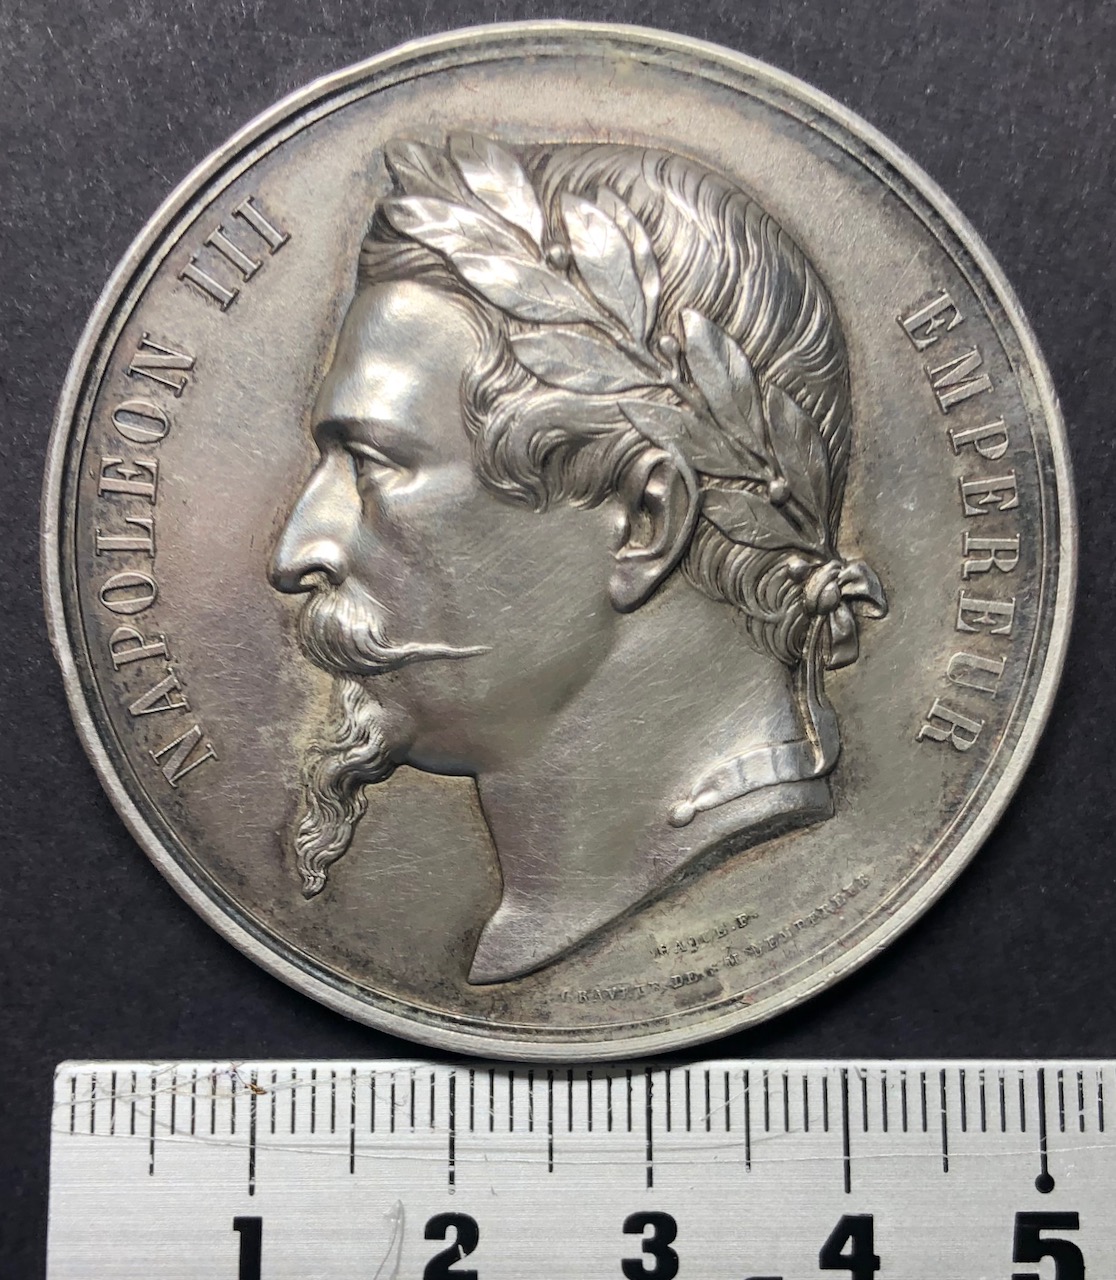 フランス1868年ナポレオン3世銀メダル画像